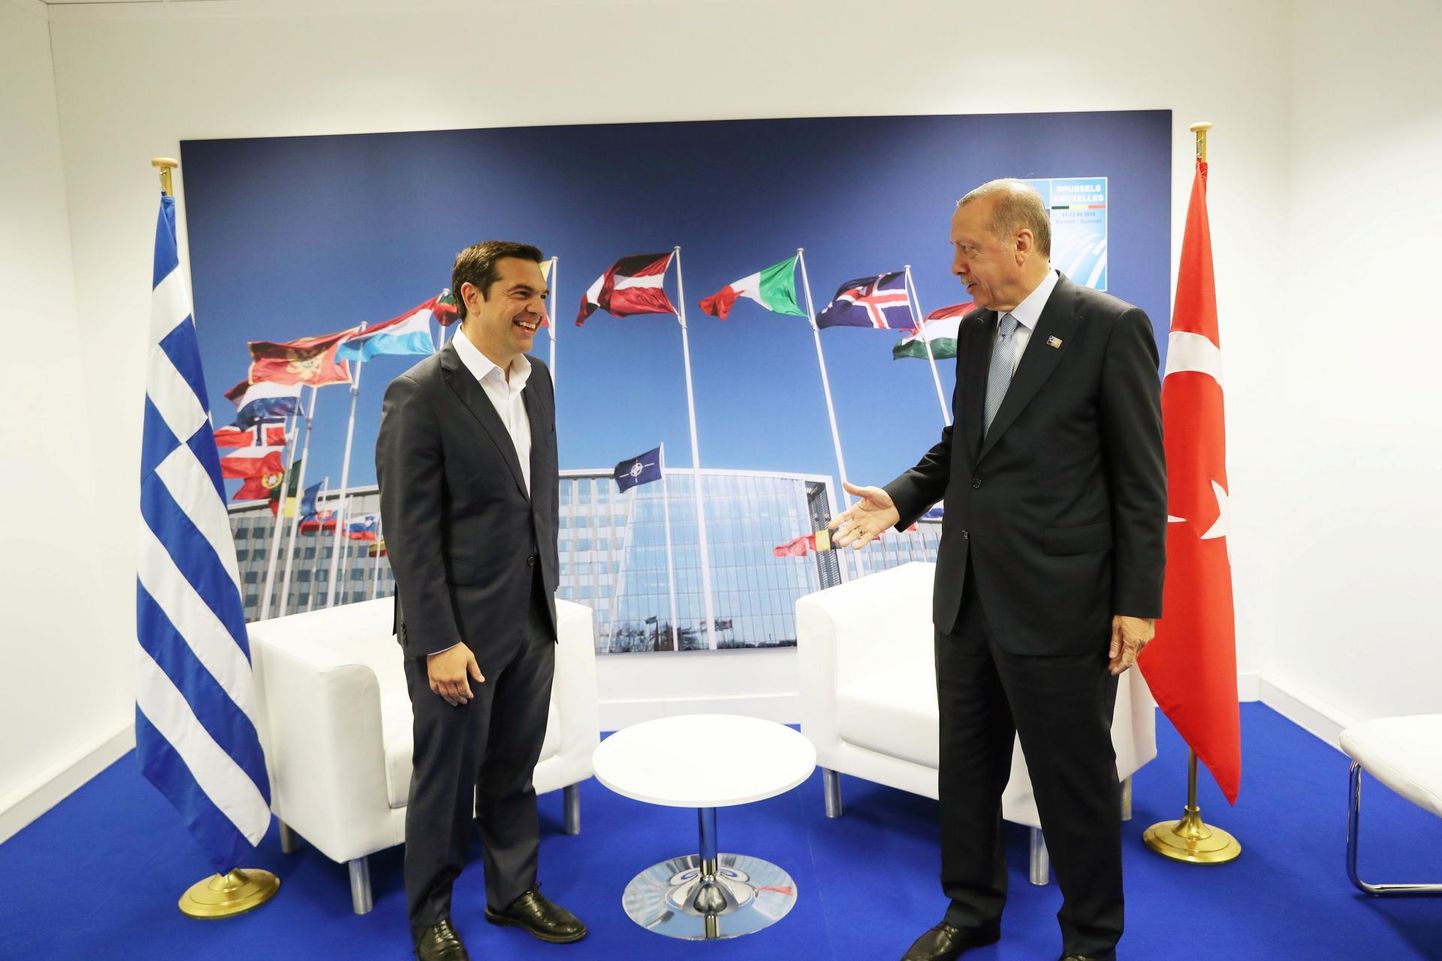 Kreeka peaminister Aléxis Tsípras (vasakul) ja Türgi president Recep Tayyip Erdoğan on NATOs partnerid, kuid pinev olukord Egeuse merel ei lase neil teineteist päriselt usaldada.